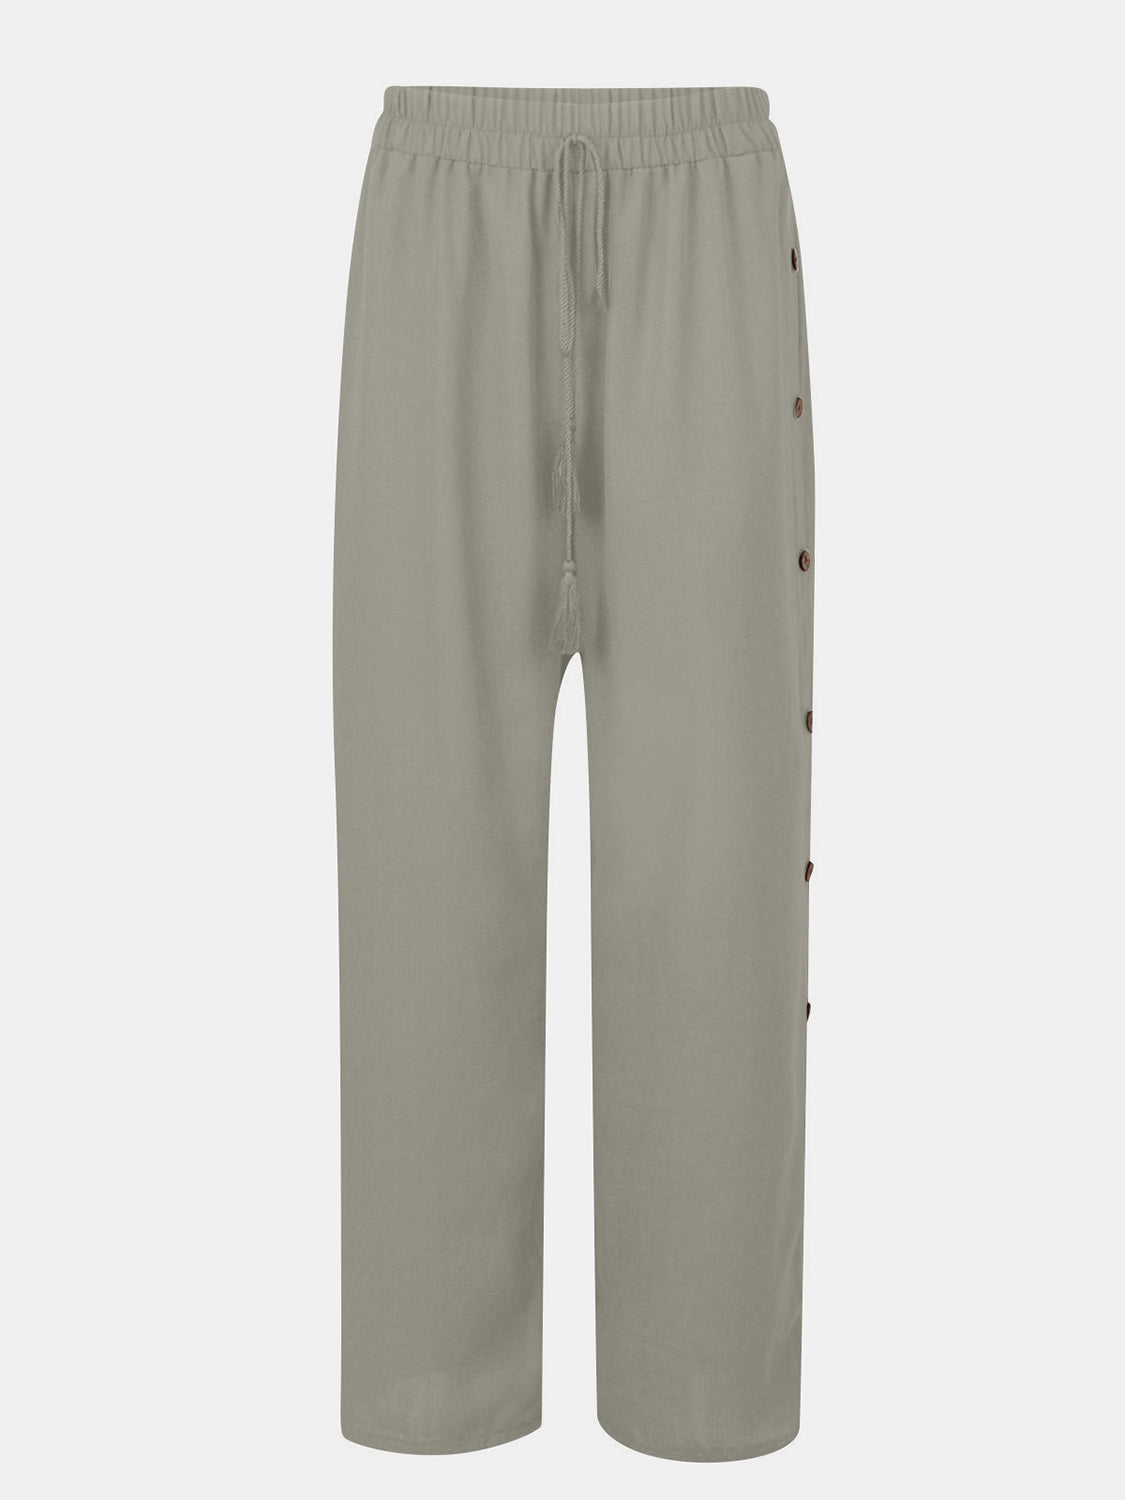 TEEK - Full Size Tassel Wide Leg Pants PANTS TEEK Trend Light Gray S 